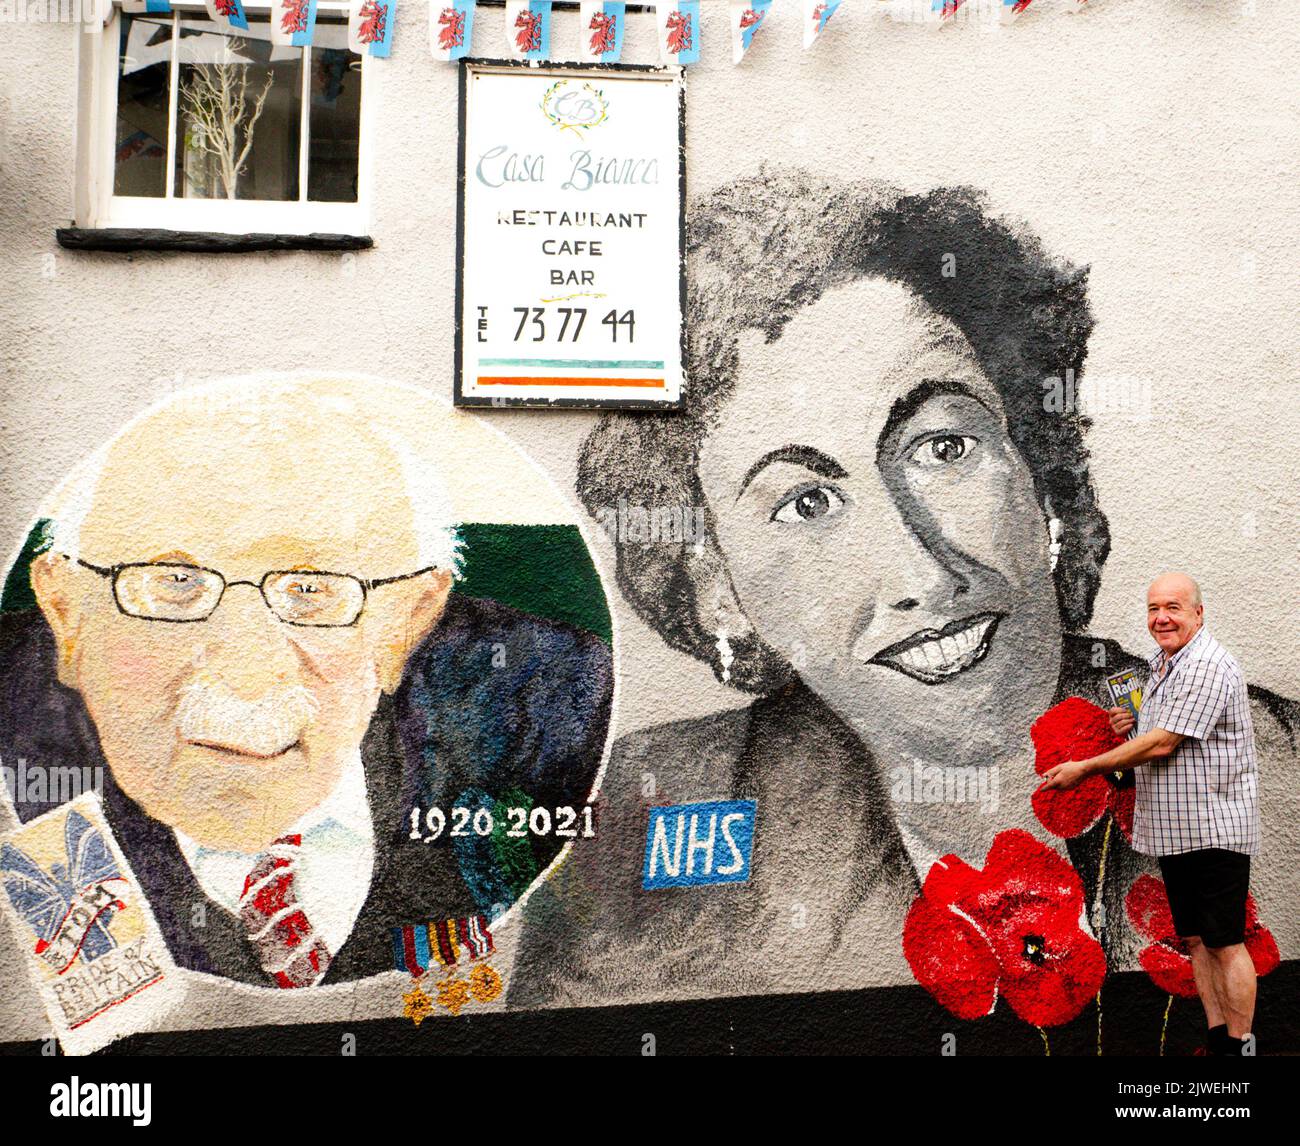 Paul Cable, edicola e artista locale di Abergavenny, si trova accanto a un murale che dipinse in città, con il capitano Sir Tom Moore e Dame vera Lynn. Foto Stock